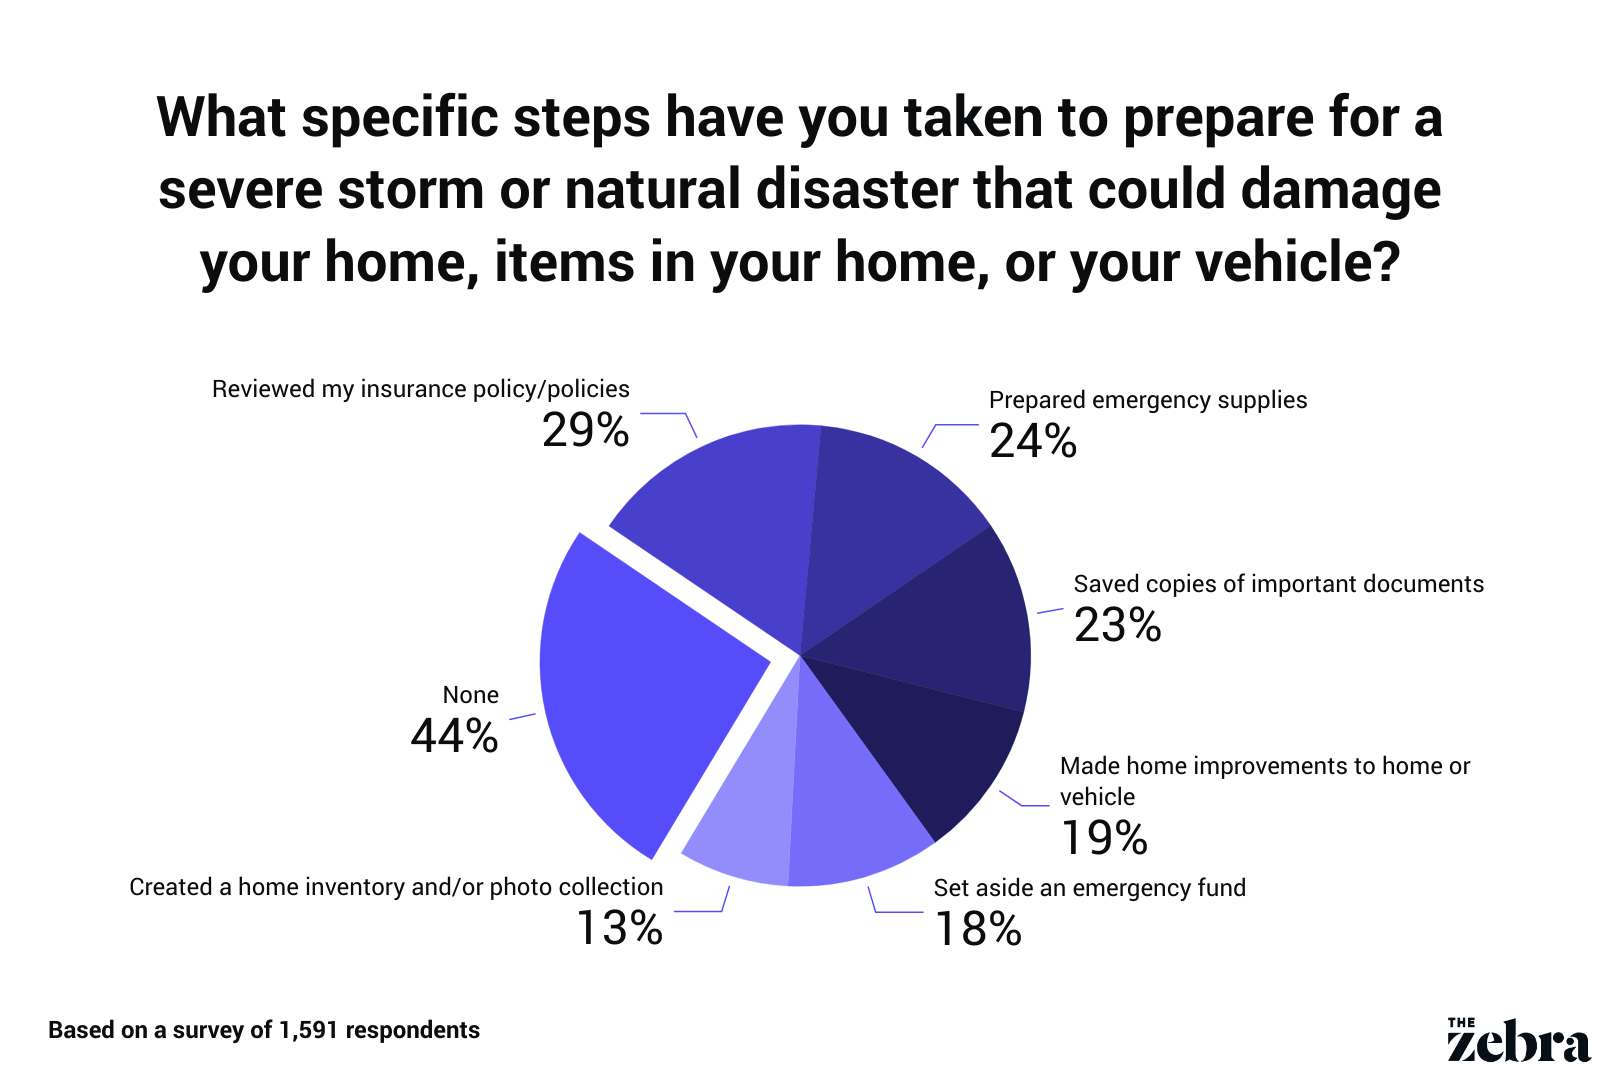 Hurricane preparedness lessens stress when a disaster strikes